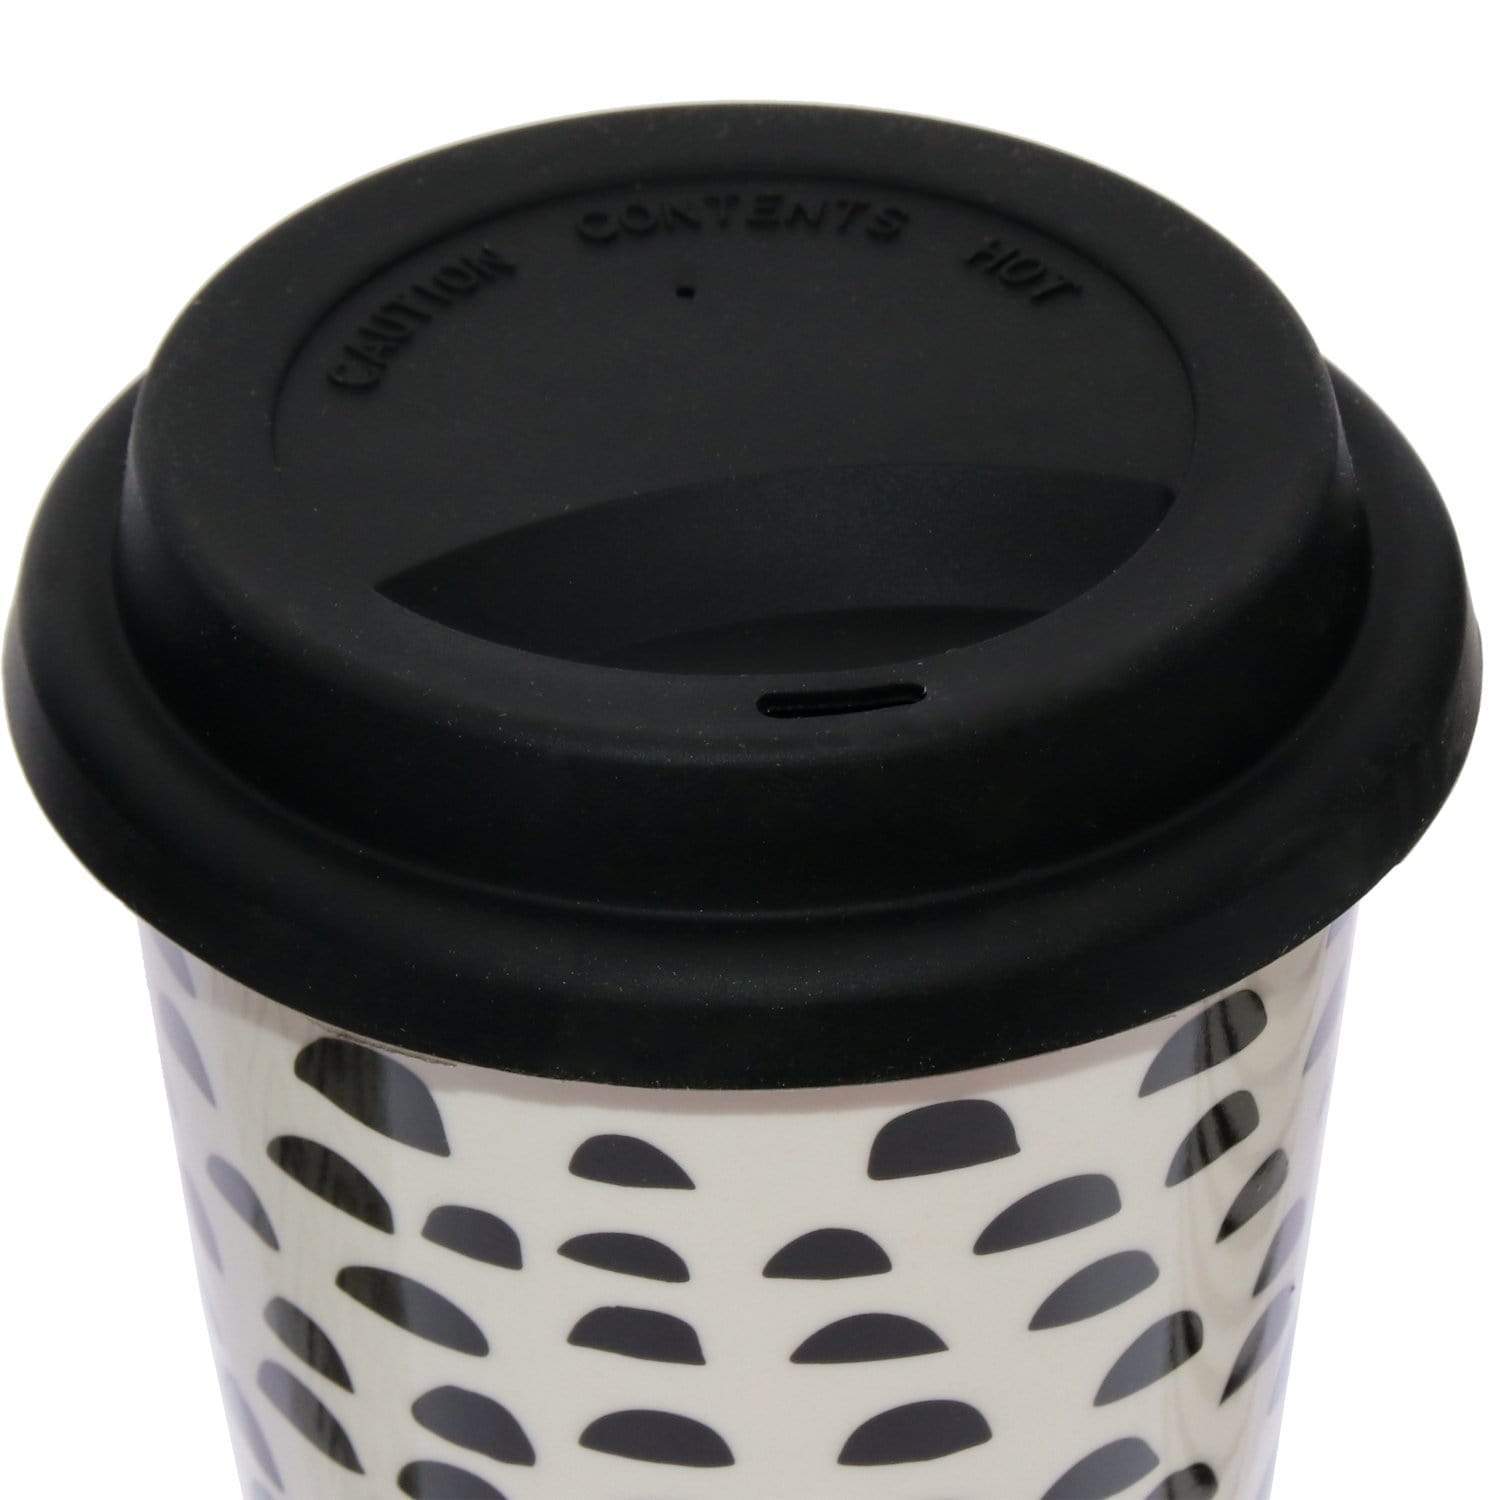 Travel mug tazza con coperchio in silicone termica in porcellana bianco e nero - Dolci pensieri gift